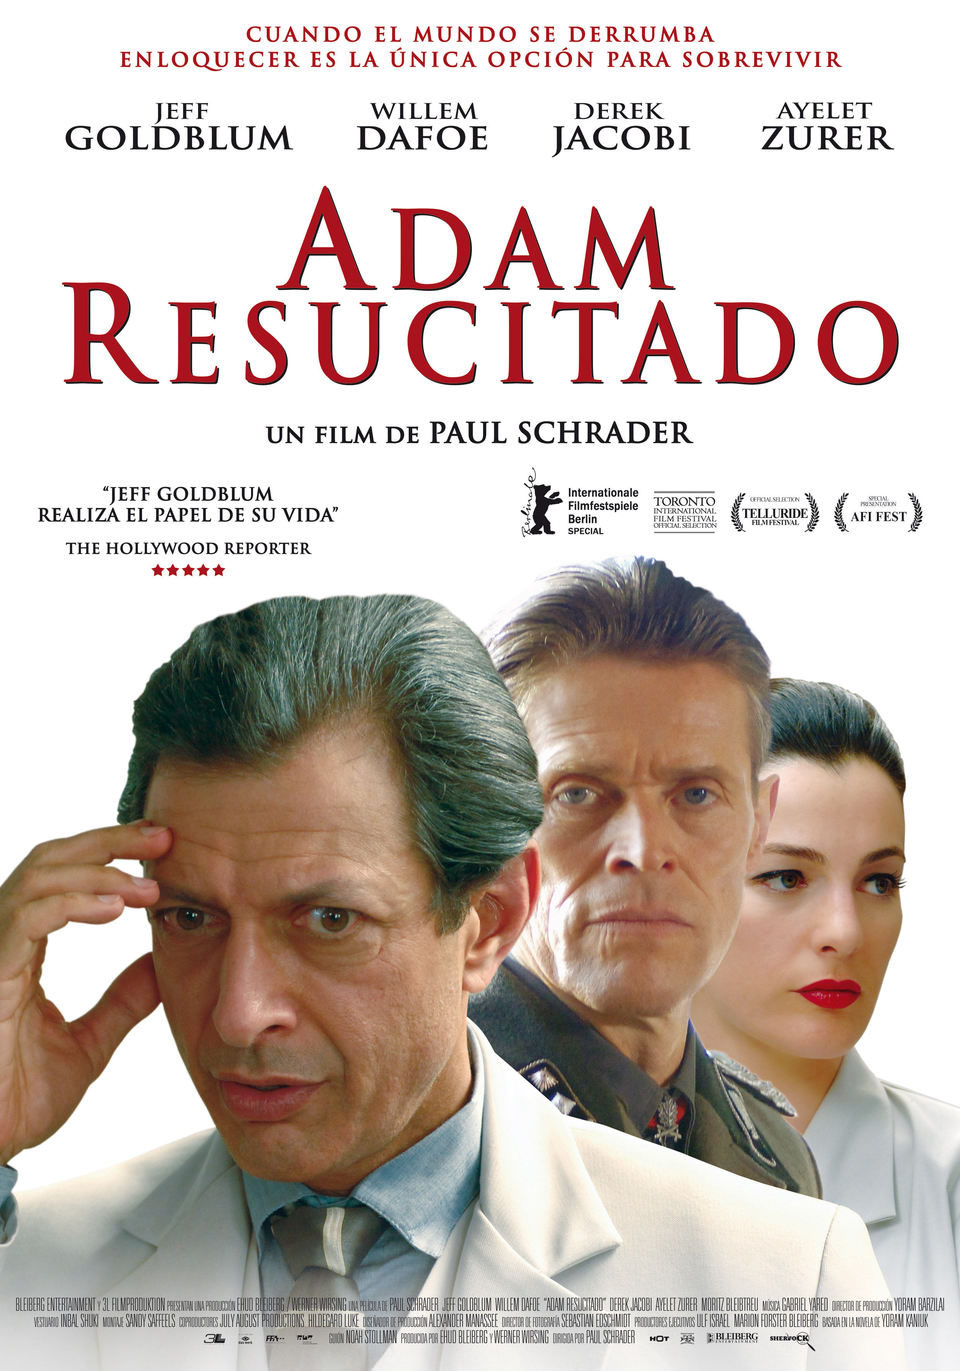 Adam Resucitado (Paul Schrader, 2009) 001-adam-resucitado-espana